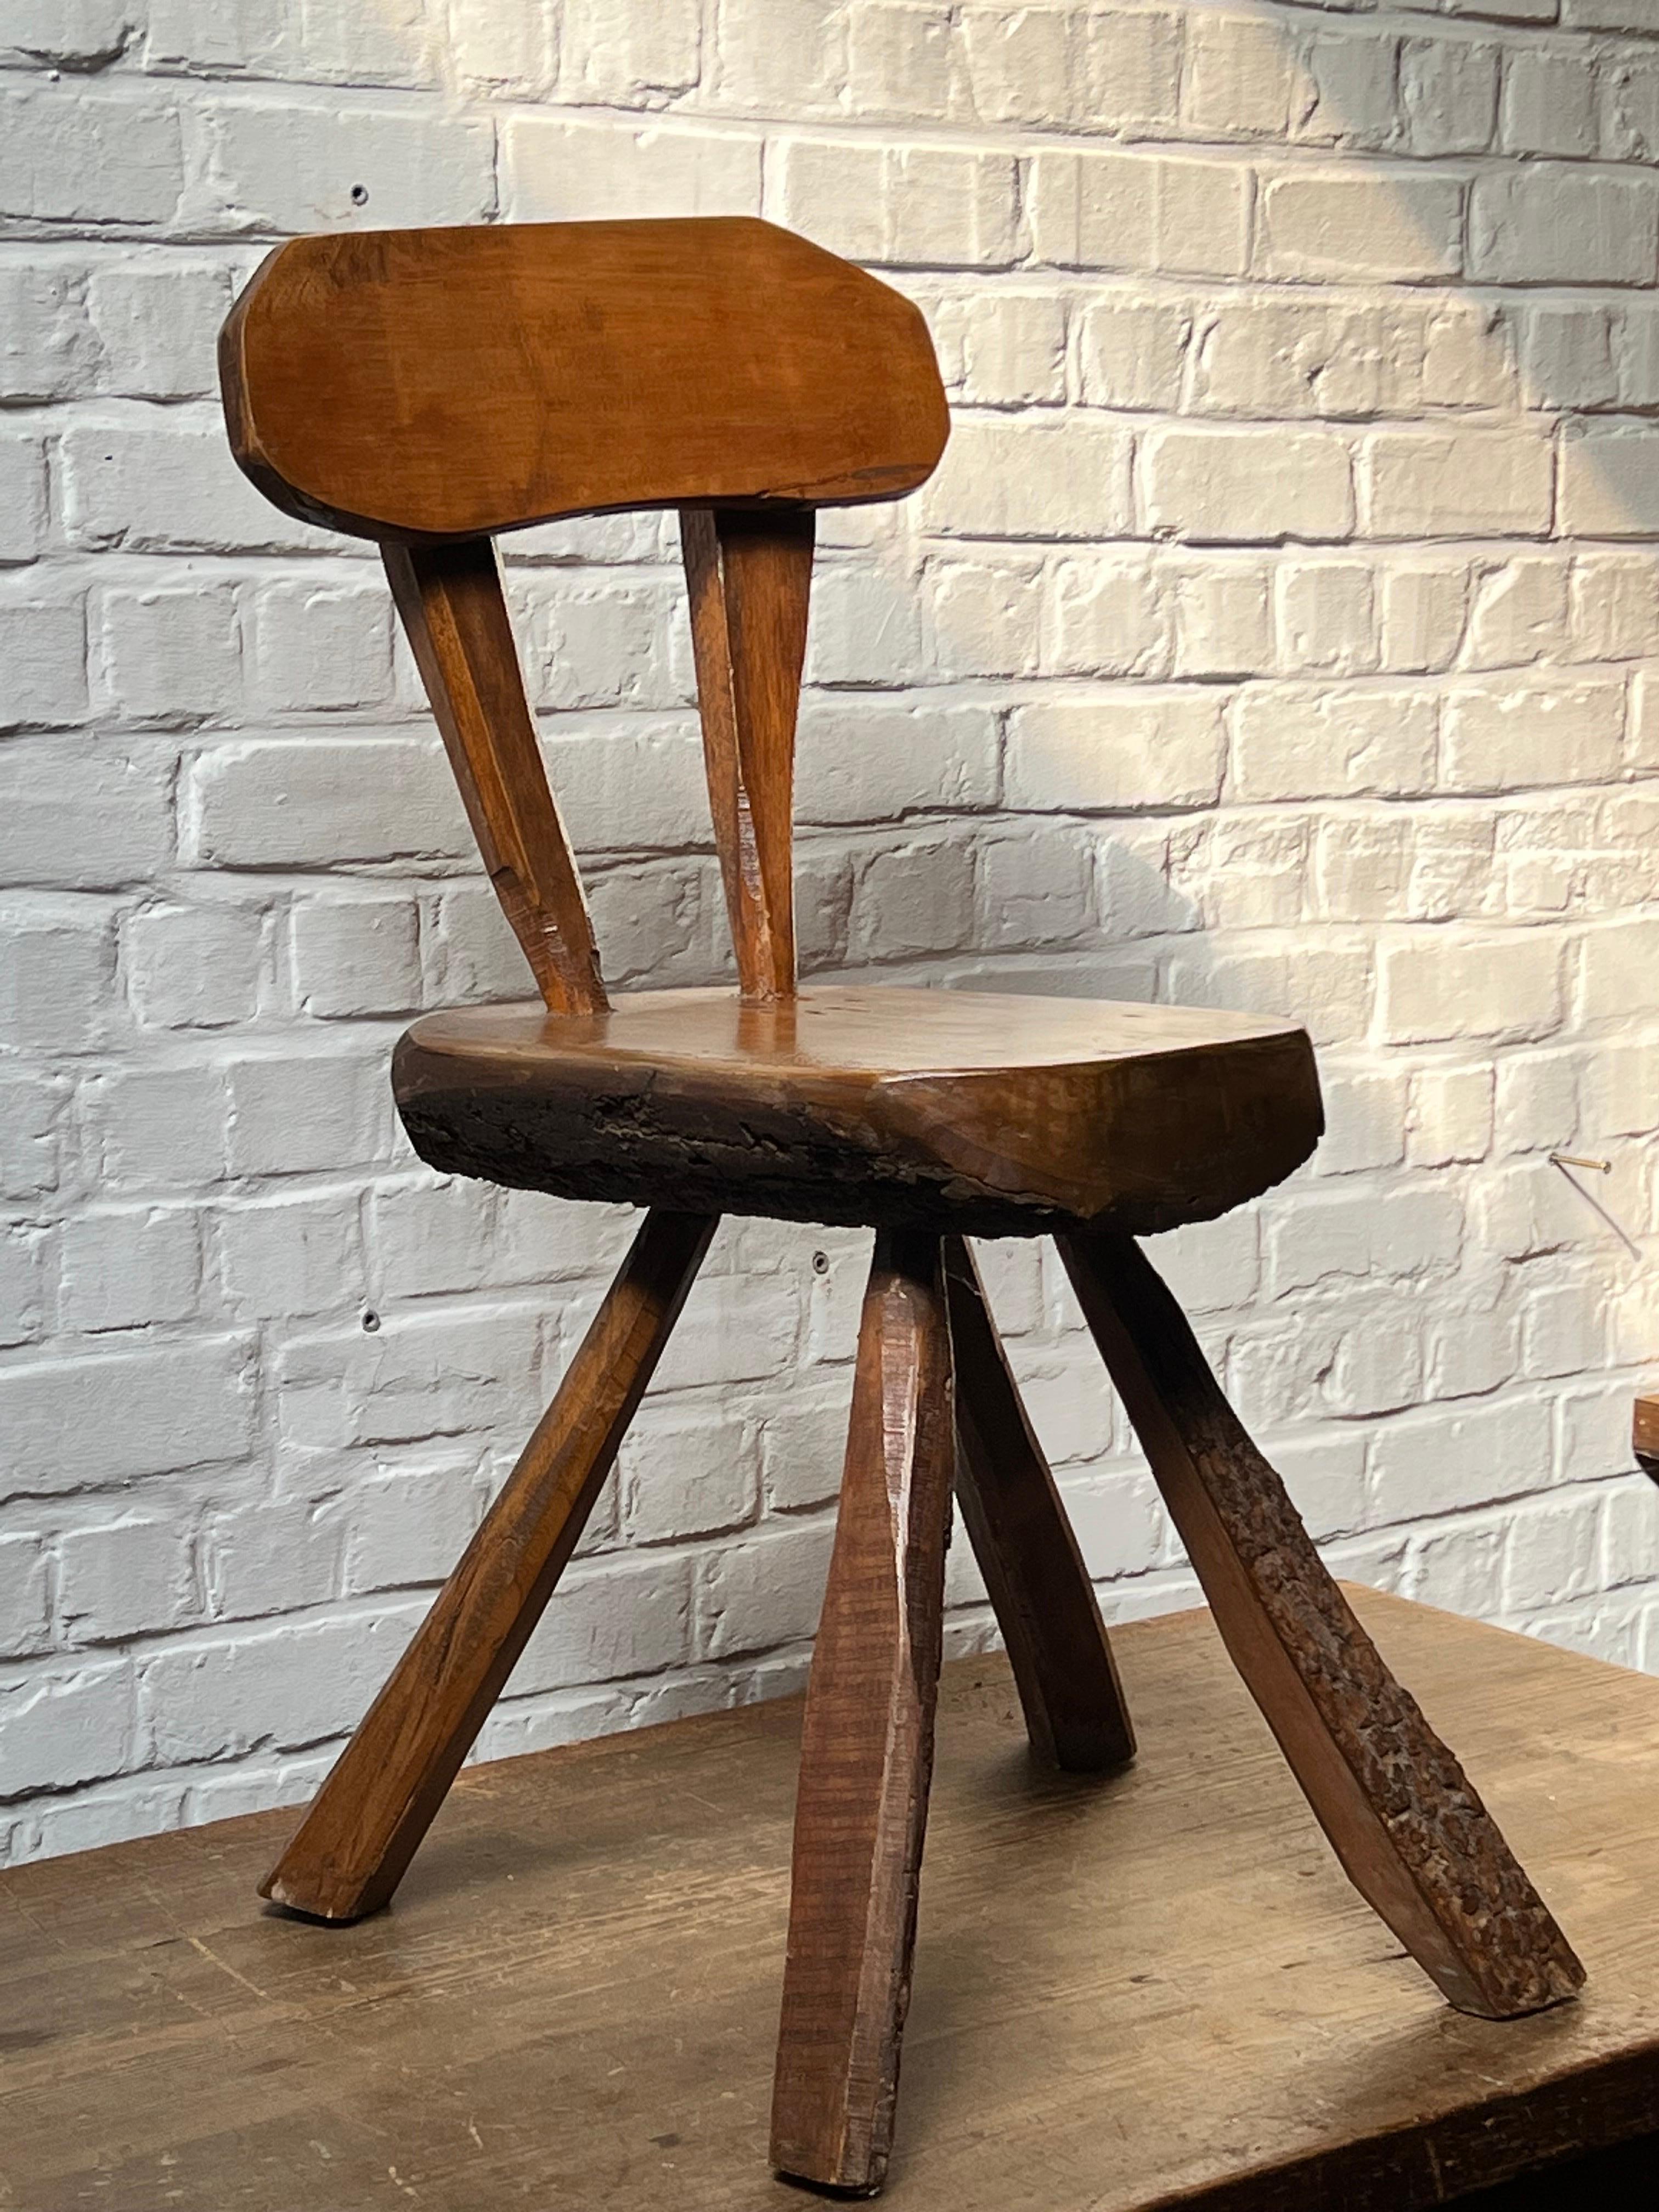 Très unique, fabriqué à la main avec du pin massif. Chaise inhabituelle. L'ensemble est patiné et présente diverses nuances de couleurs brunes/brunâtres. Elegant et brutaliste décrivent bien cette chaise. Une chaise qui attire tous les regards.